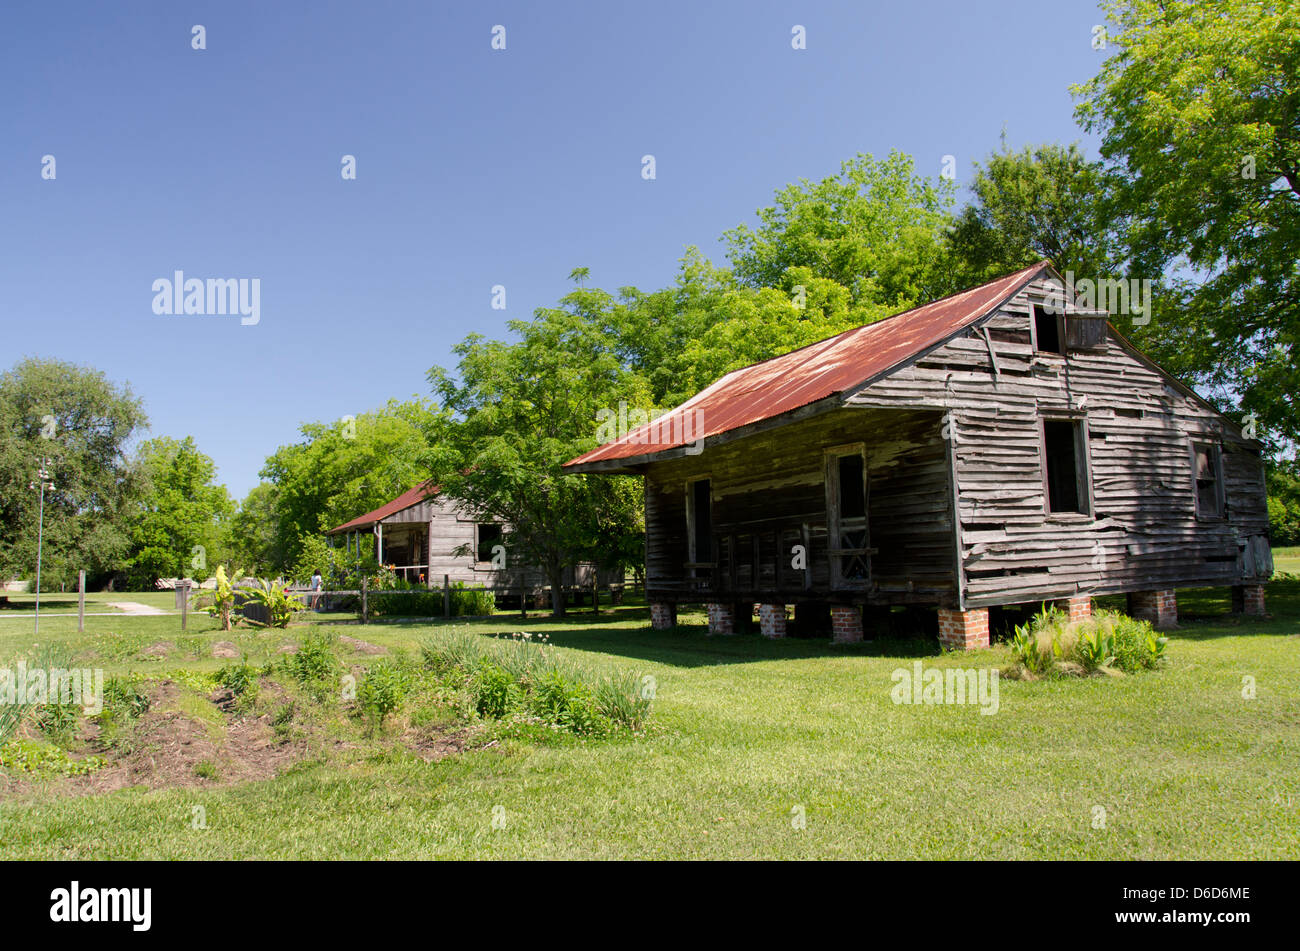 Louisiane, Nouvelle Orléans, Vacherie. 'Laura' Antebellum plantation créole historique. Cabine esclave, vers 1840. Banque D'Images